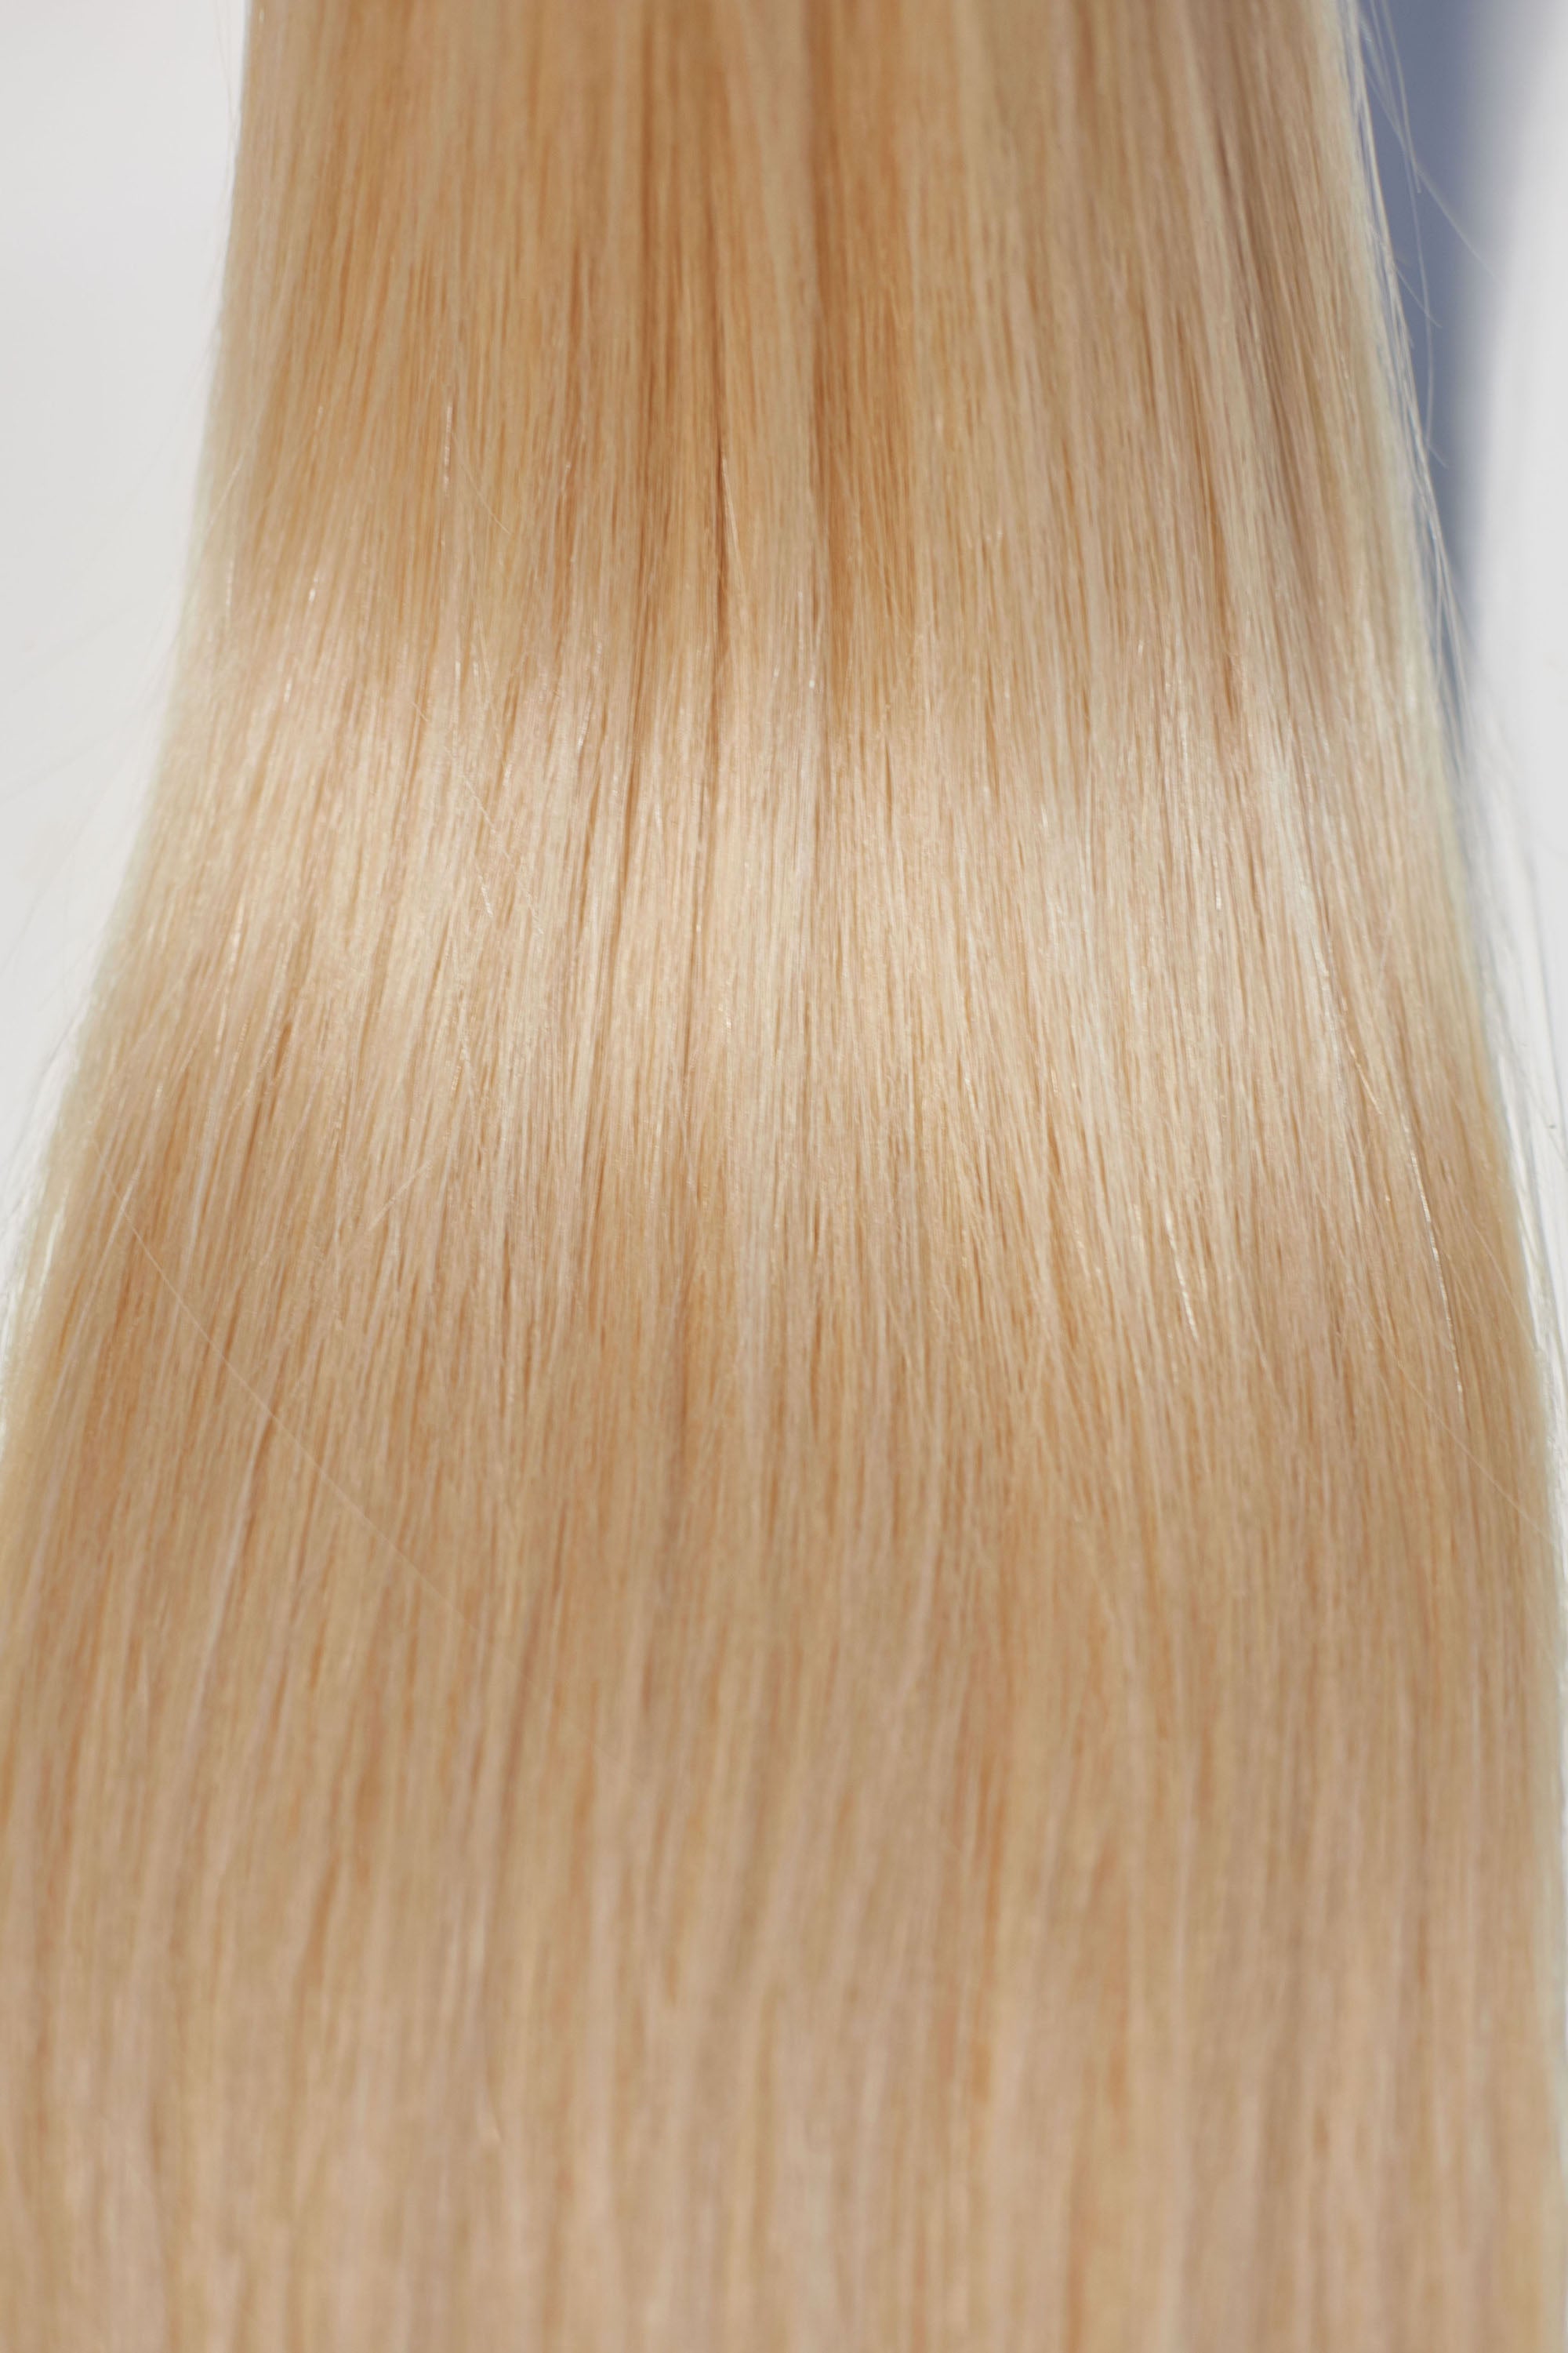 Behair professional Keratin Tip "Premium" 24" (60cm) Natural Straight Beach Blonde #613 - 25g (Micro - 0.5g each pcs) hair extensions